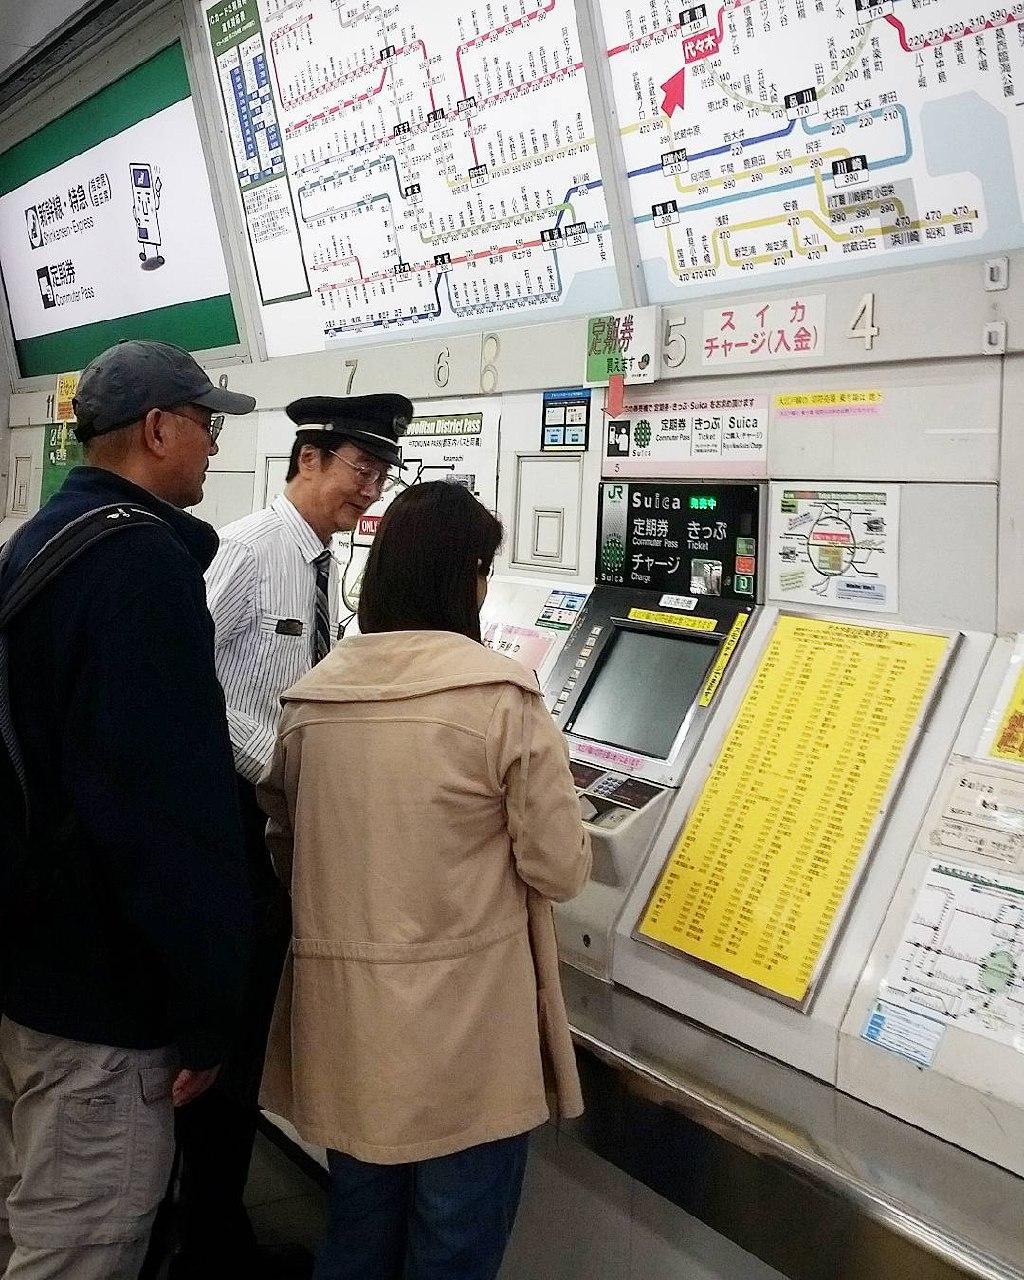 Ticket machine in a Tokyo train station